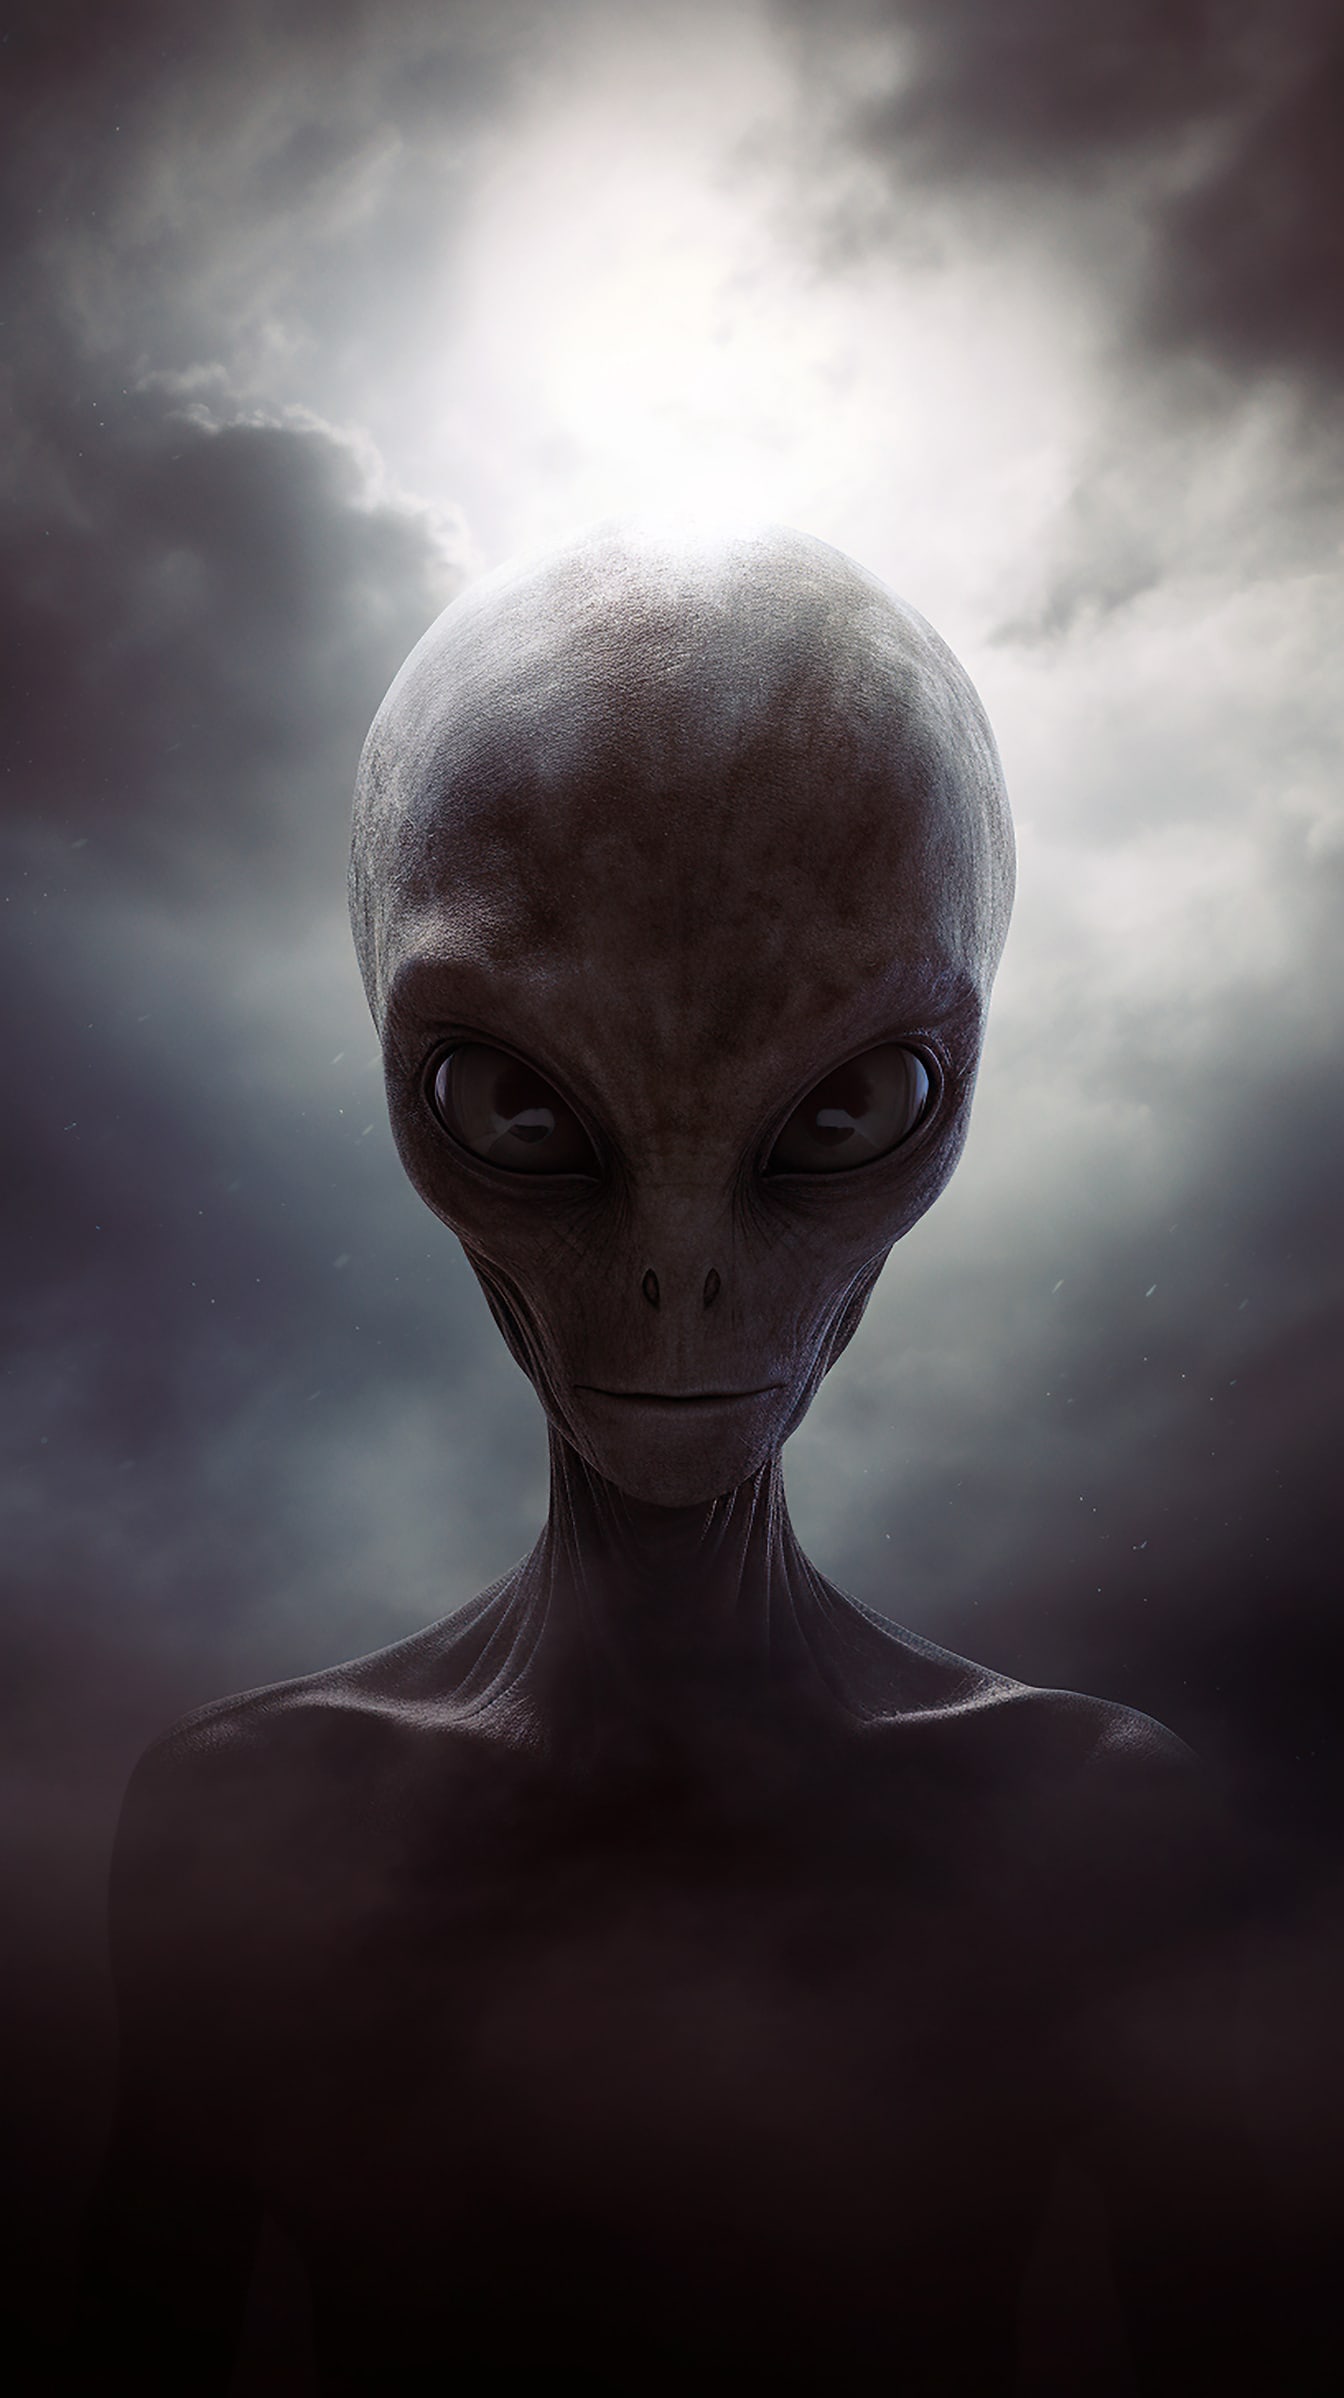 Portrét humanoidního mimozemského tvora s šedou kůží a očima